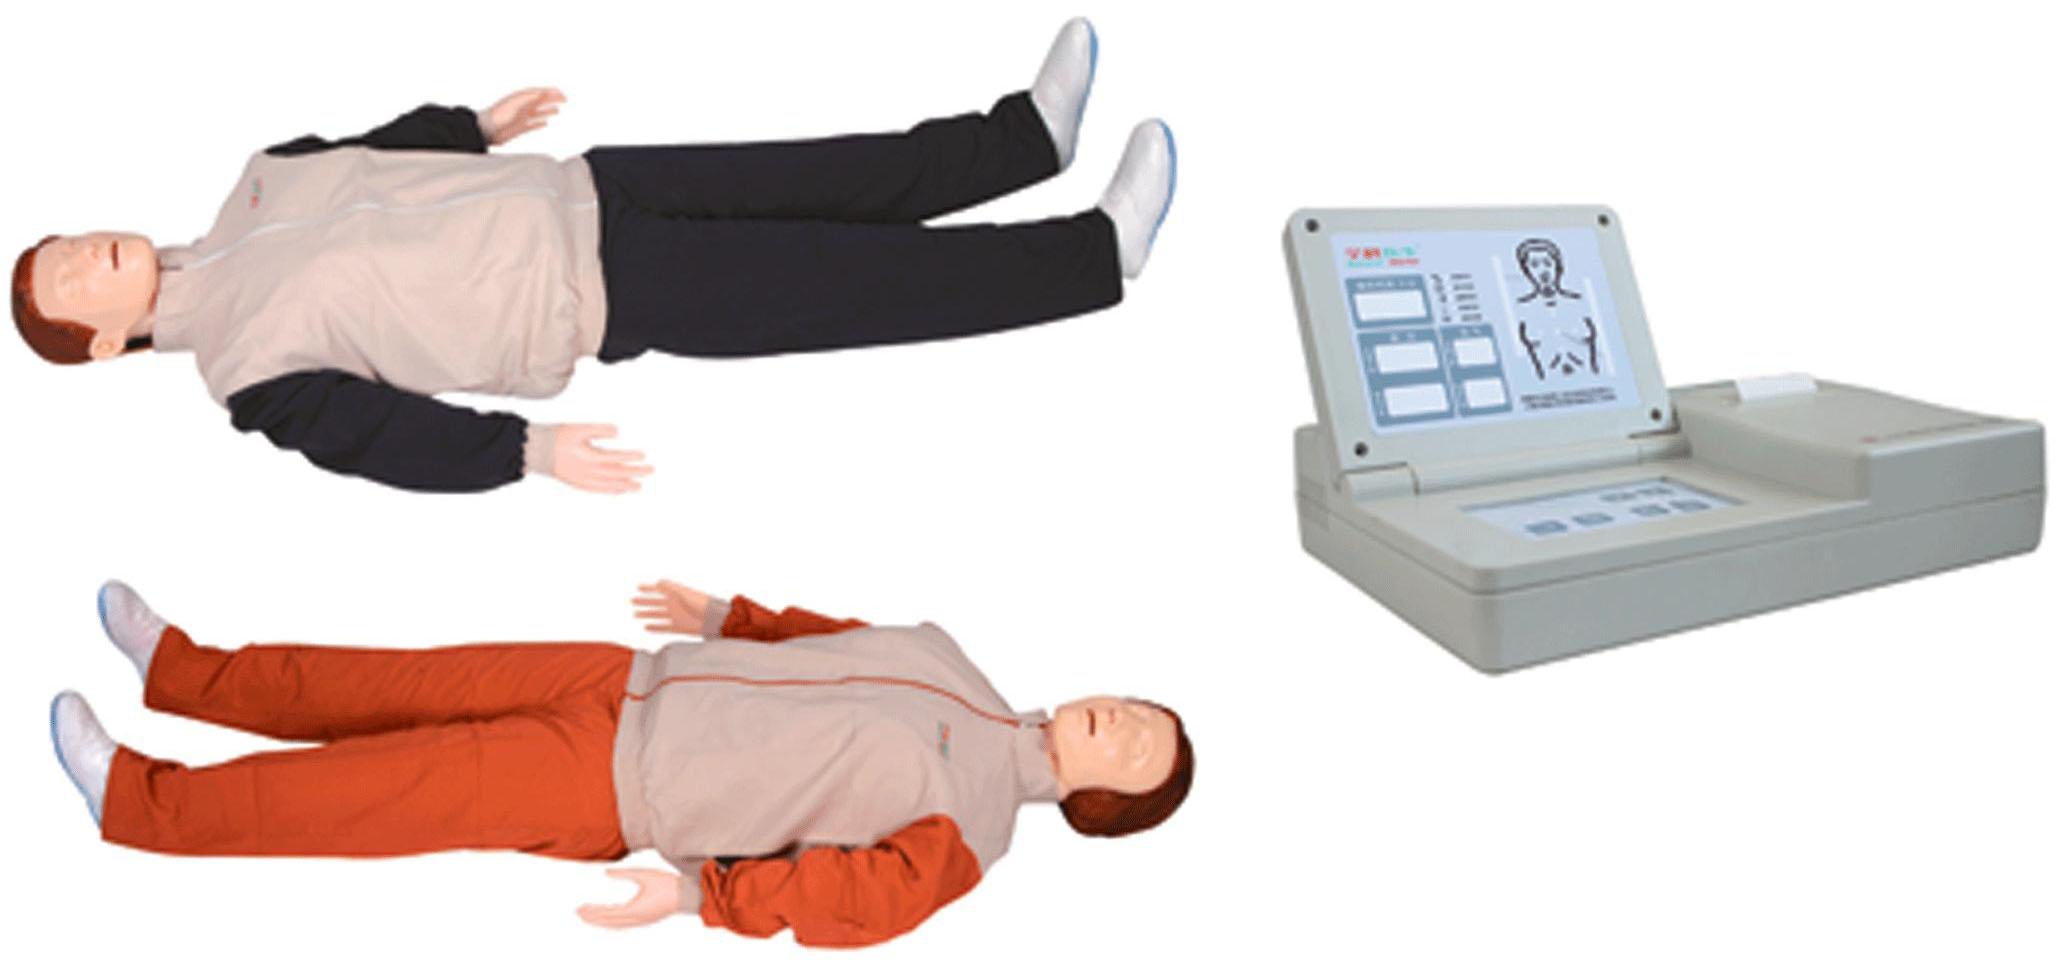 高级自动心肺复苏模拟人GD/CPR10280该产品结合2010国际心肺复苏标准，产品功能全面升级。突出CPR操作前的检查和判断，更加符合现实临床CPR操作要求，提高成活率。